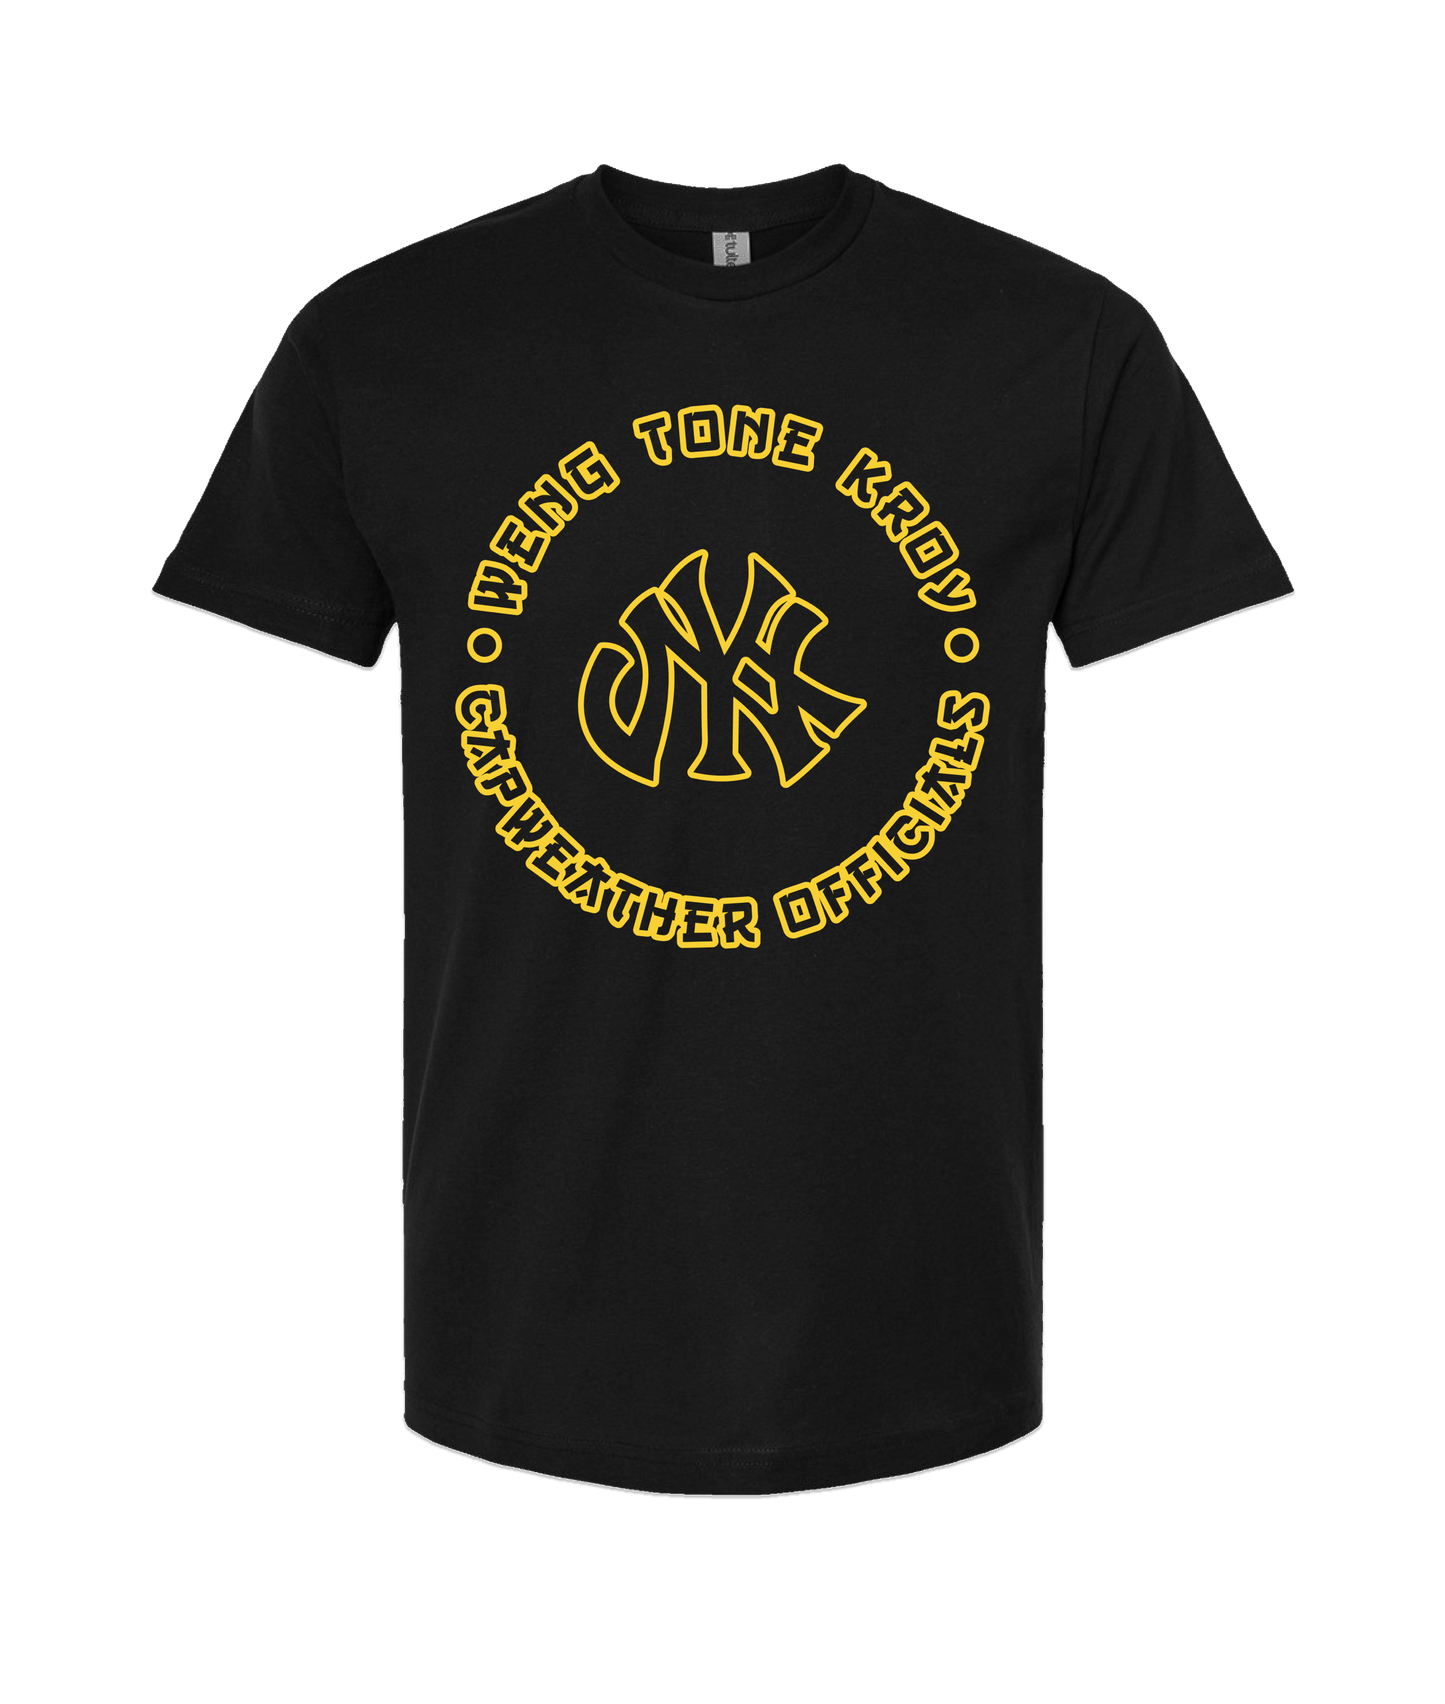 Weng Tone Kroy - DESIGN 1 - Black T-Shirt